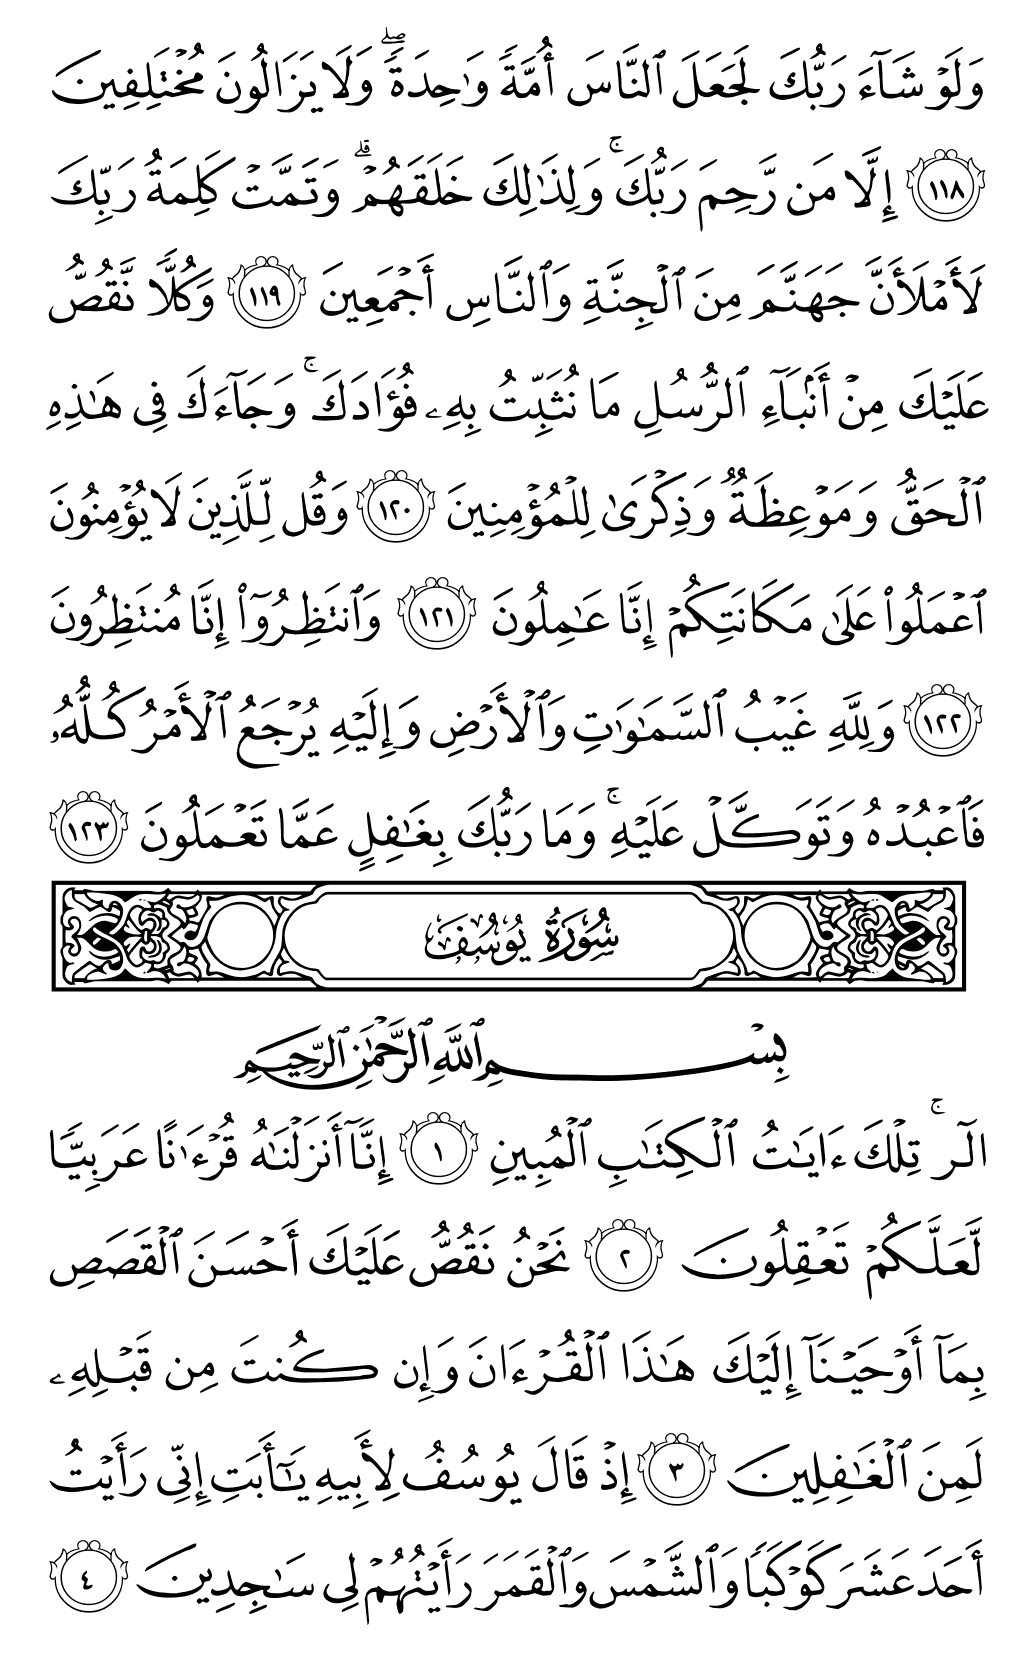 الصفحة رقم 235 من القرآن الكريم